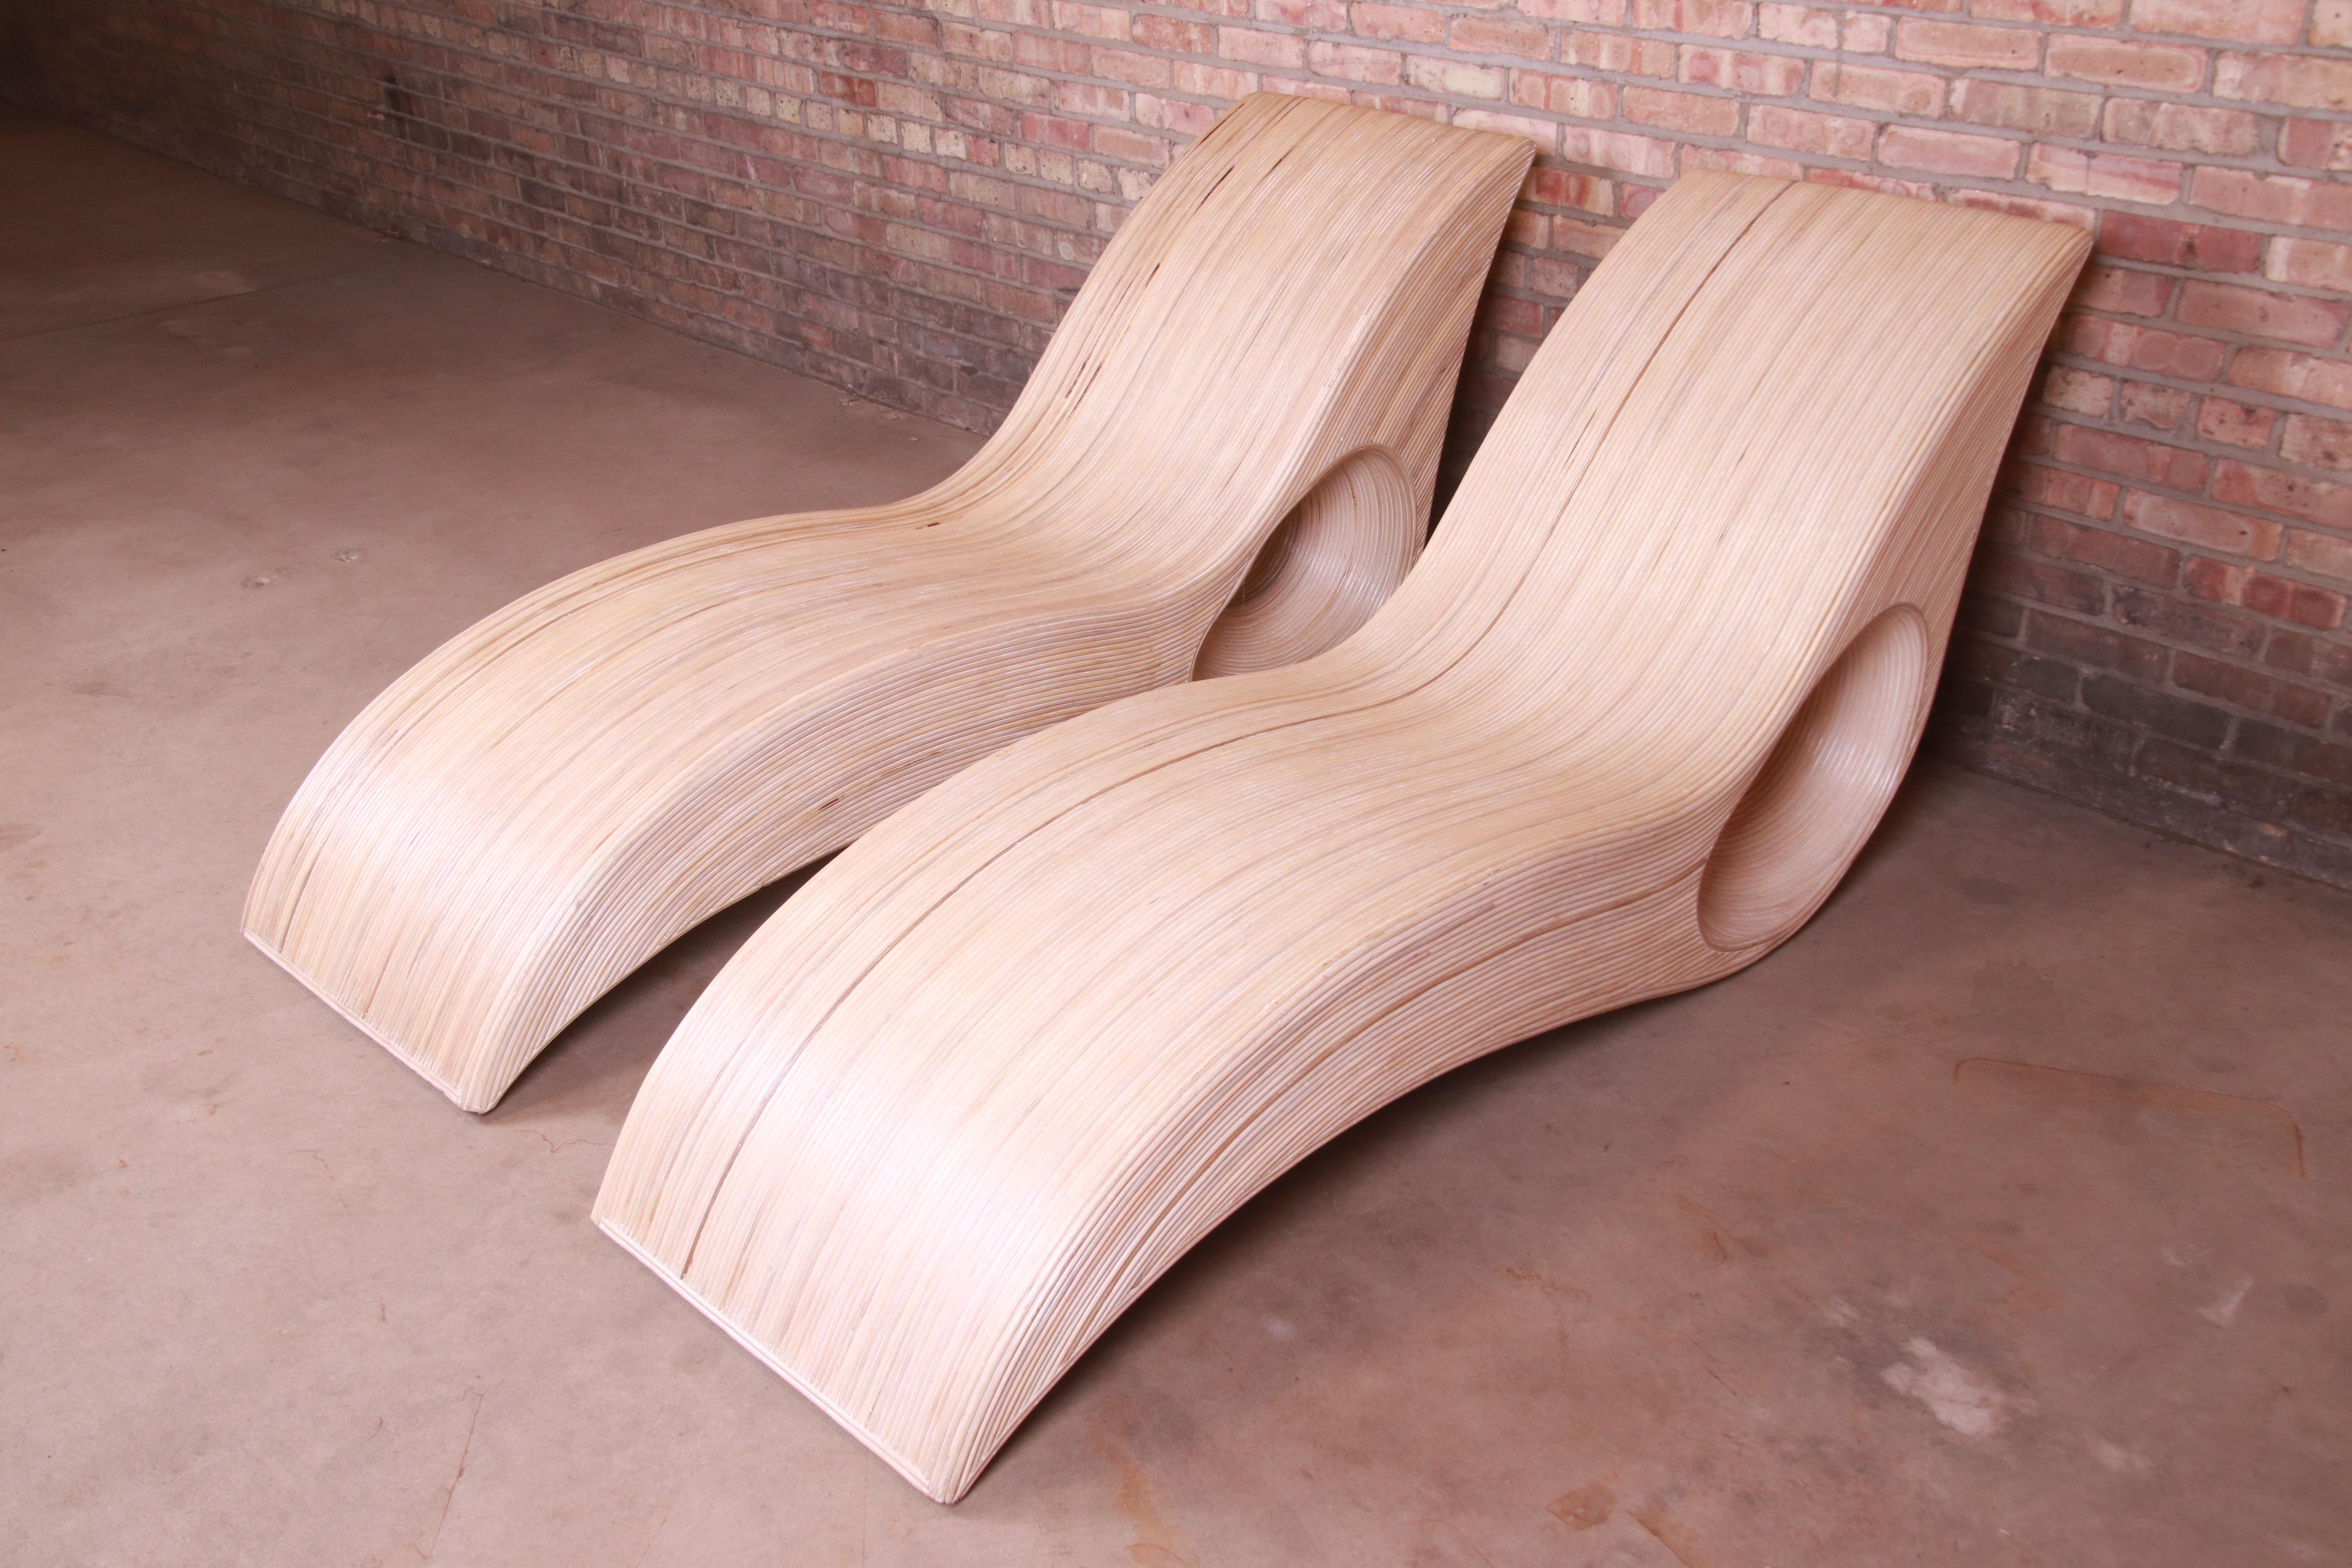 Une magnifique paire de chaises longues en rotin fendu, organiques et modernes

Par Betty Cobonpue

1980s

Mesures : 23.75 